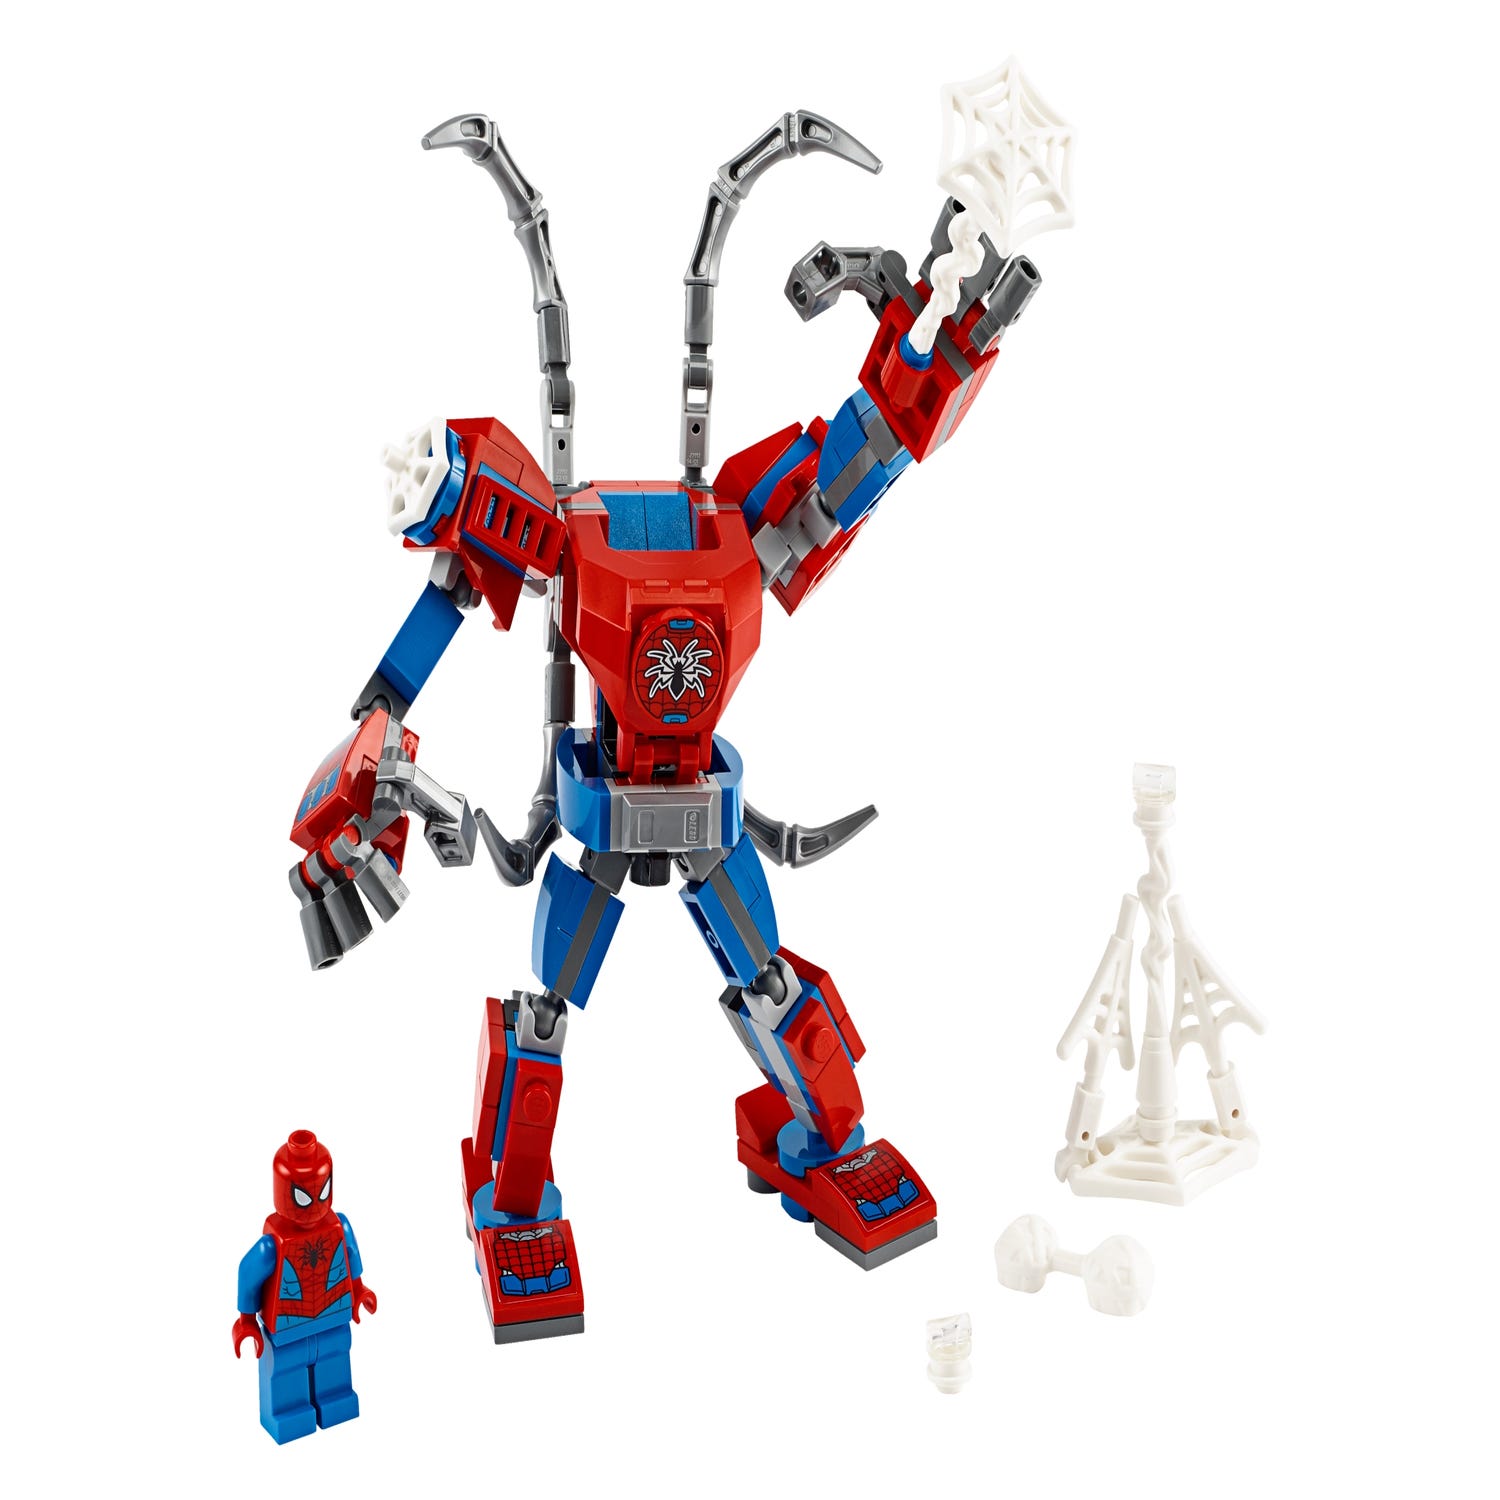 Lego Robot Spiderman | vlr.eng.br